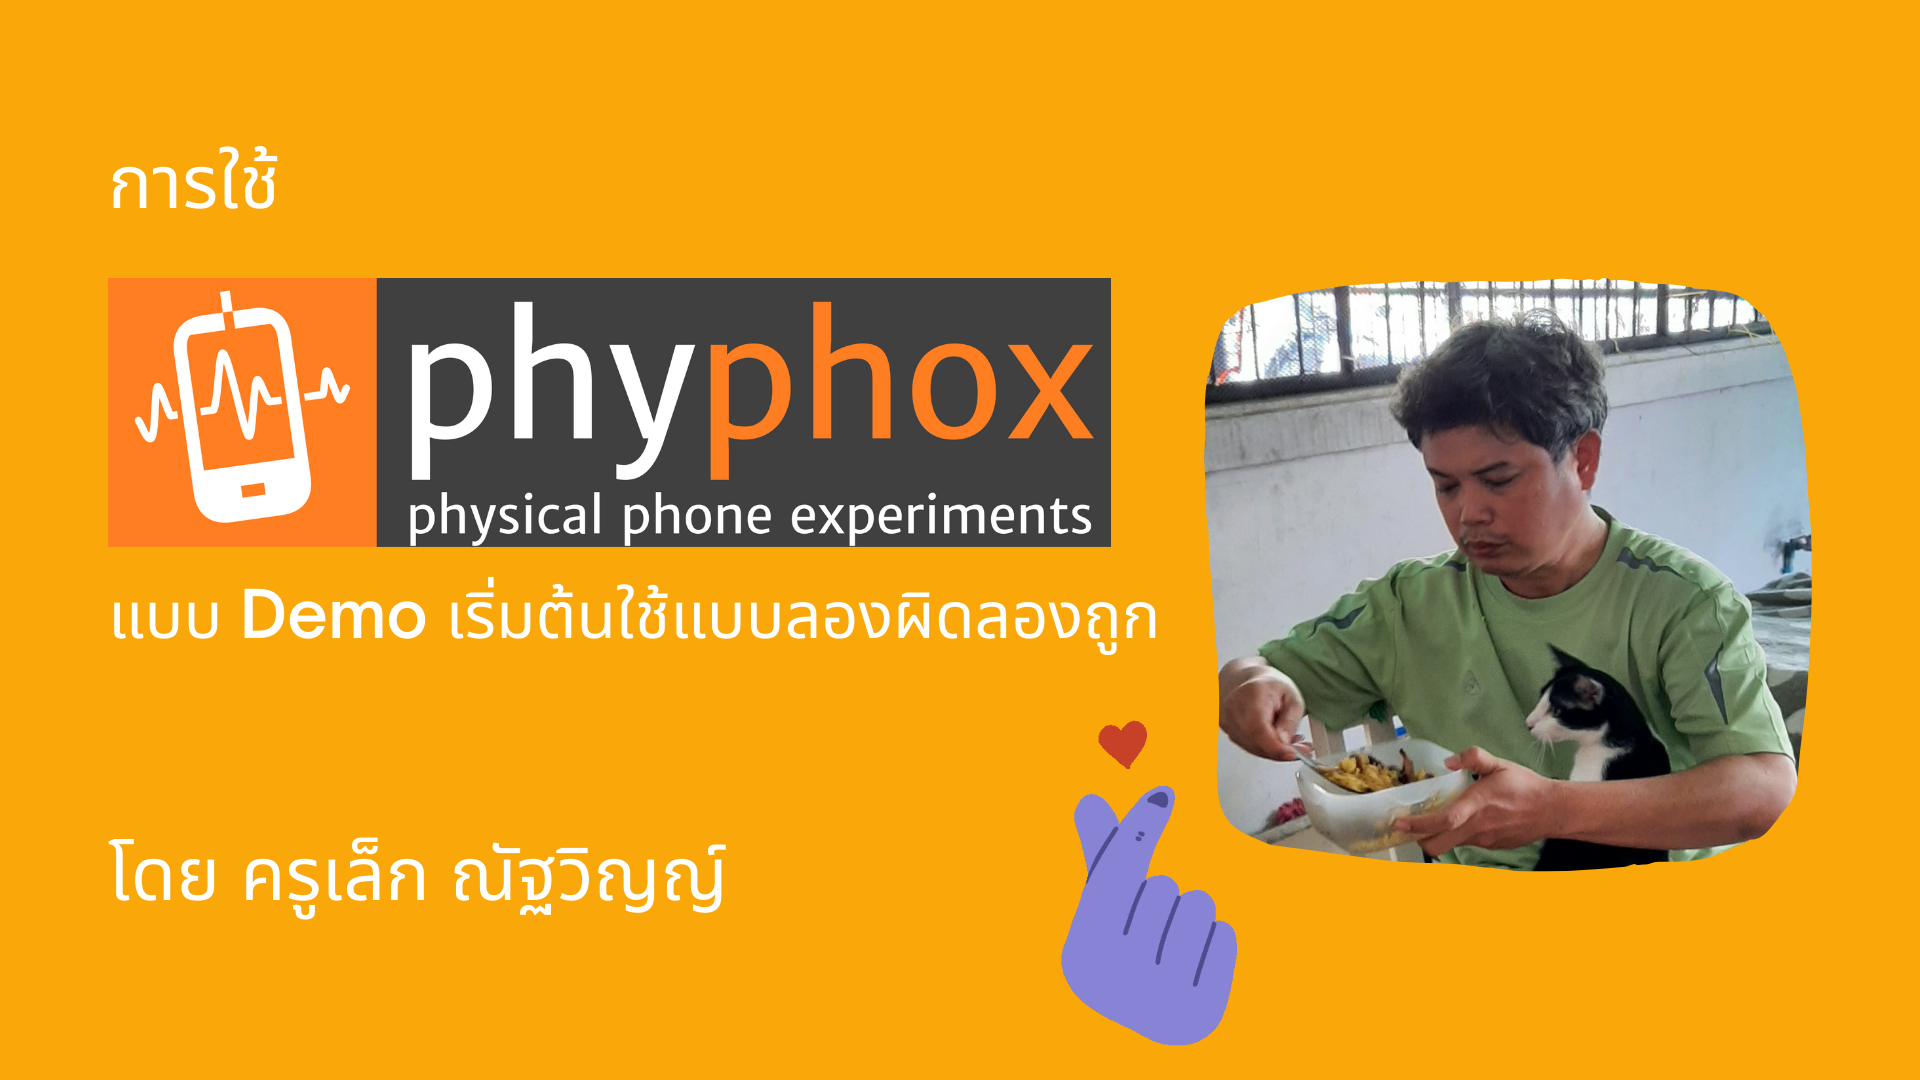 ภาพประกอบไอเดีย แอปพลิเคชัน Phyphox สอนฟิสิกส์